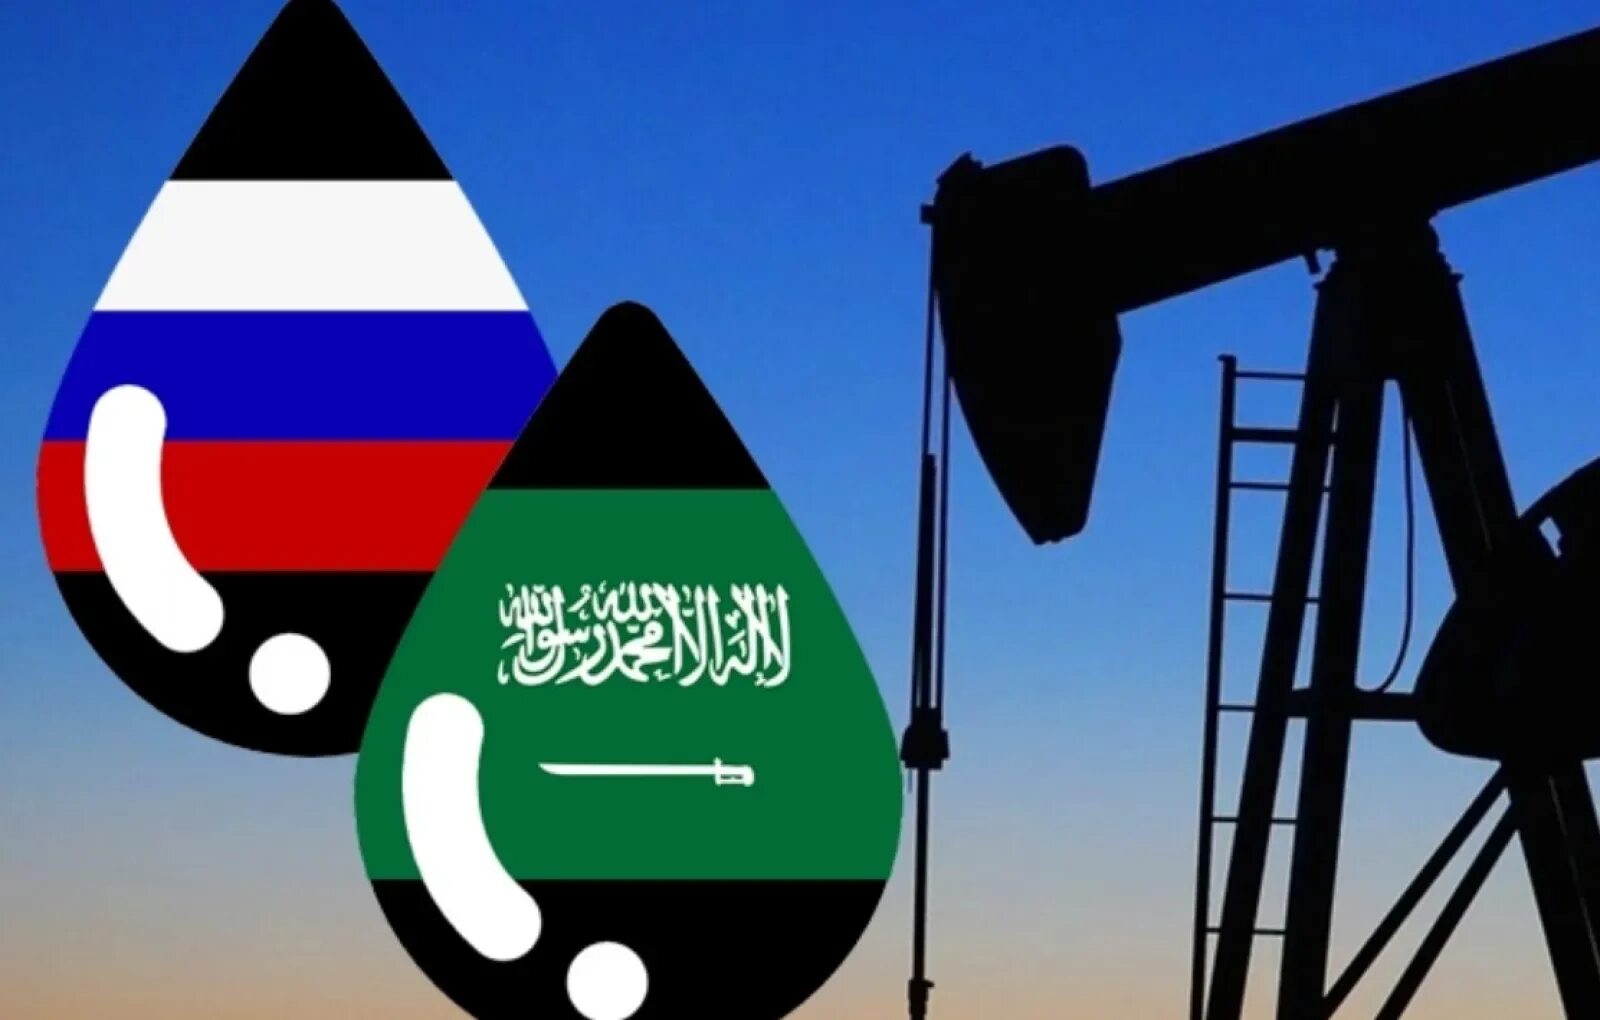 Саудовская Аравия нефтедобыча. Саудовская Аравия нефть. Саудиты нефть РФ нефть. Флаг Саудовской Аравии нефть. Саудовская аравия опек